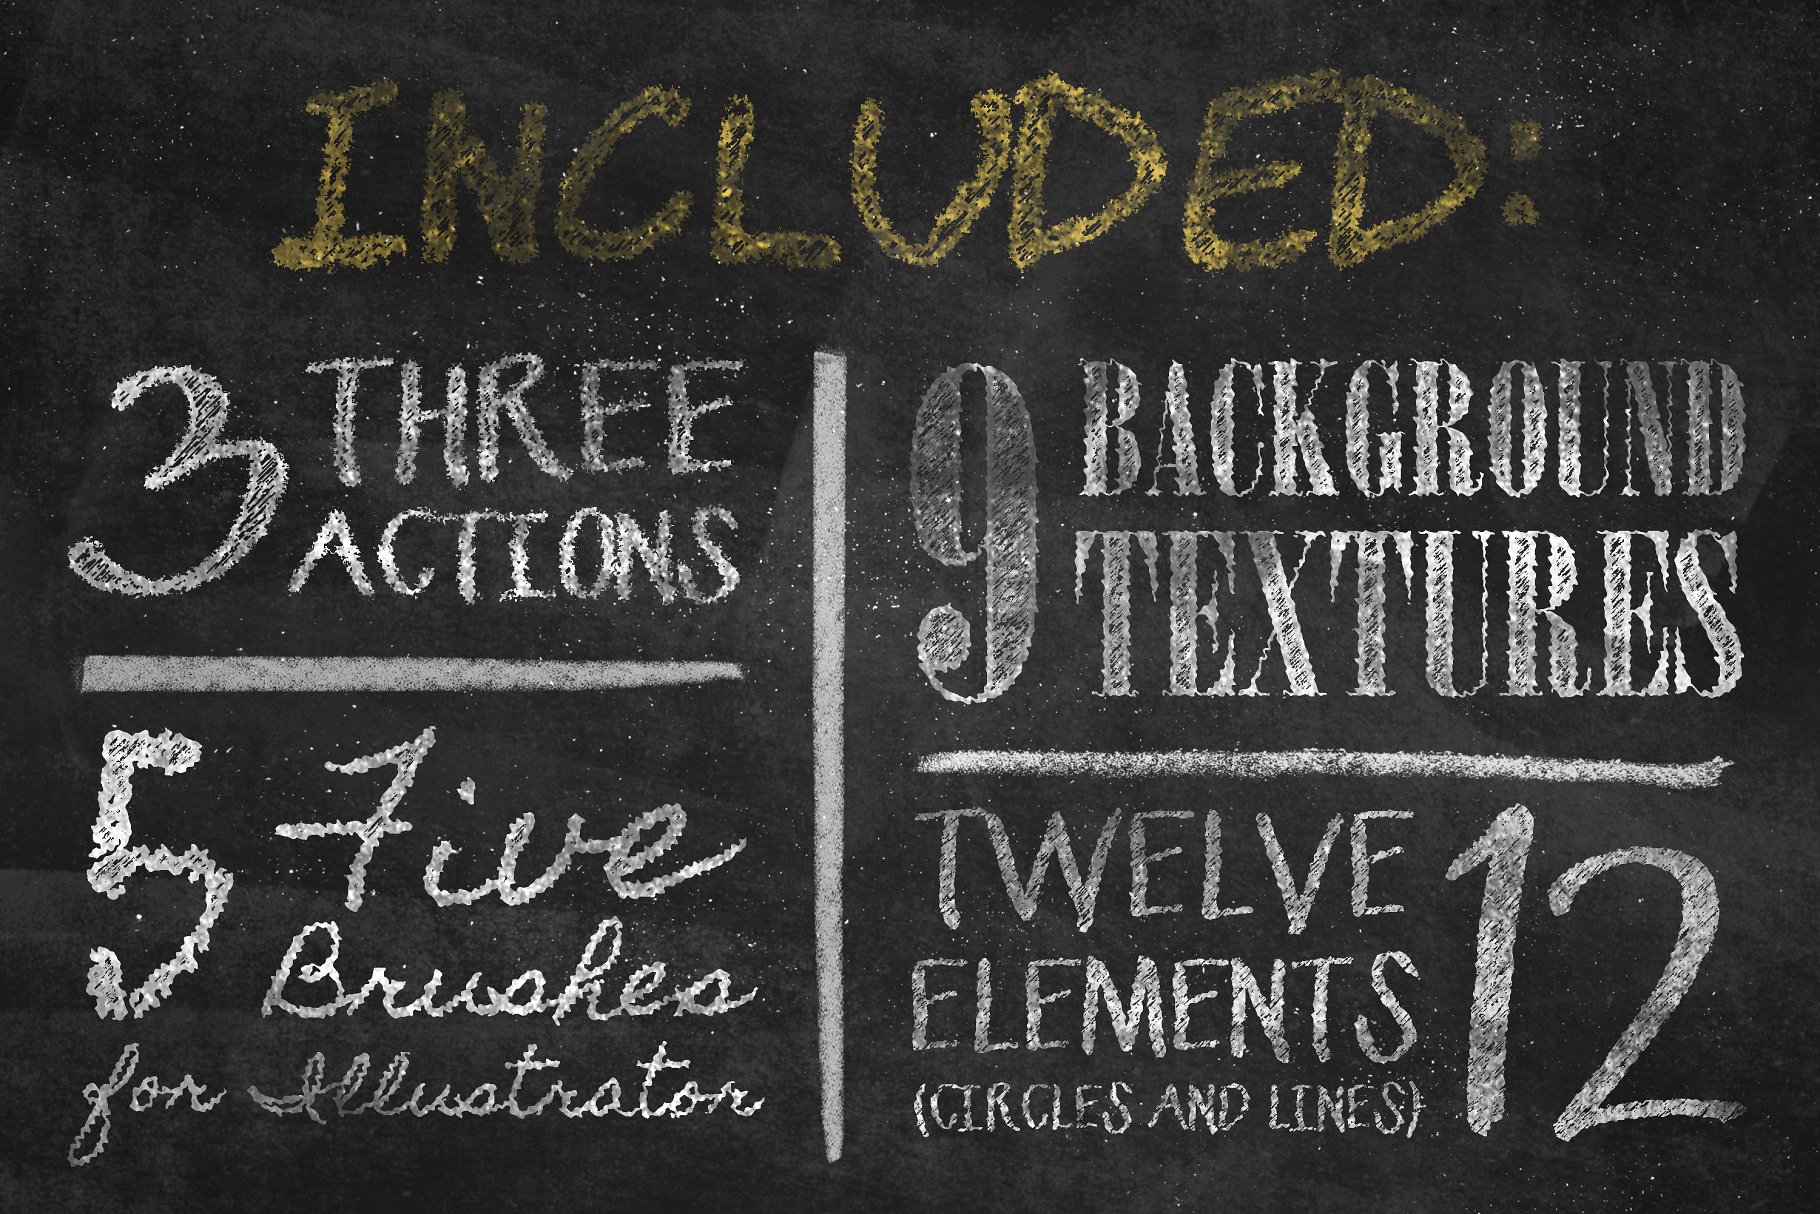 粉笔效果字体图层样式素材Chalkboard Generat